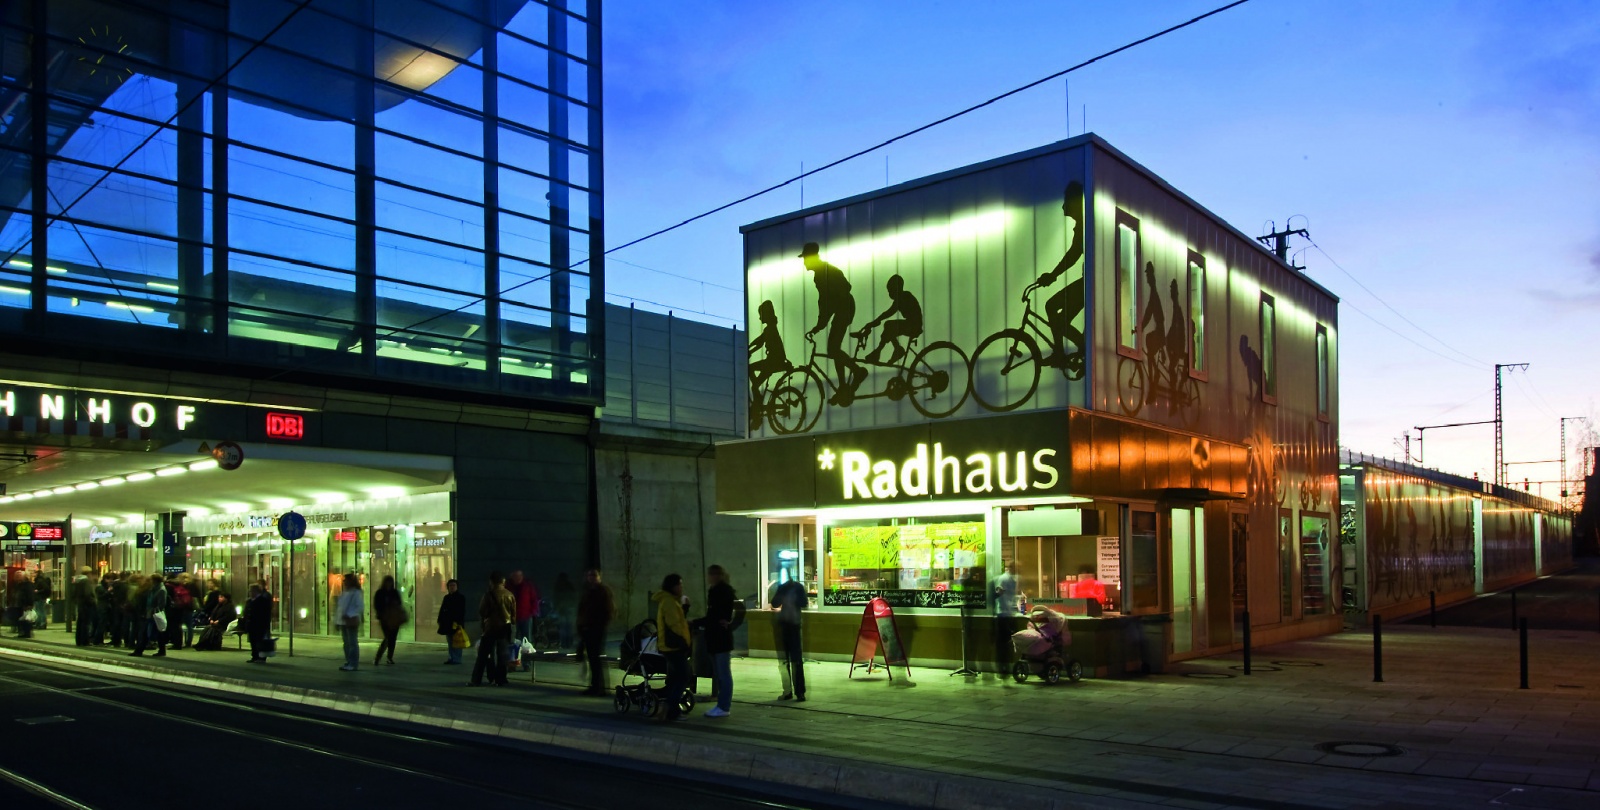 Radhaus Erfurt, als Platz und Funktionsmöbel mit Büro, Imbiss, Parkhaus und Werkstatt, Bild: Michael Miltzow,  Bildwerk Weimar